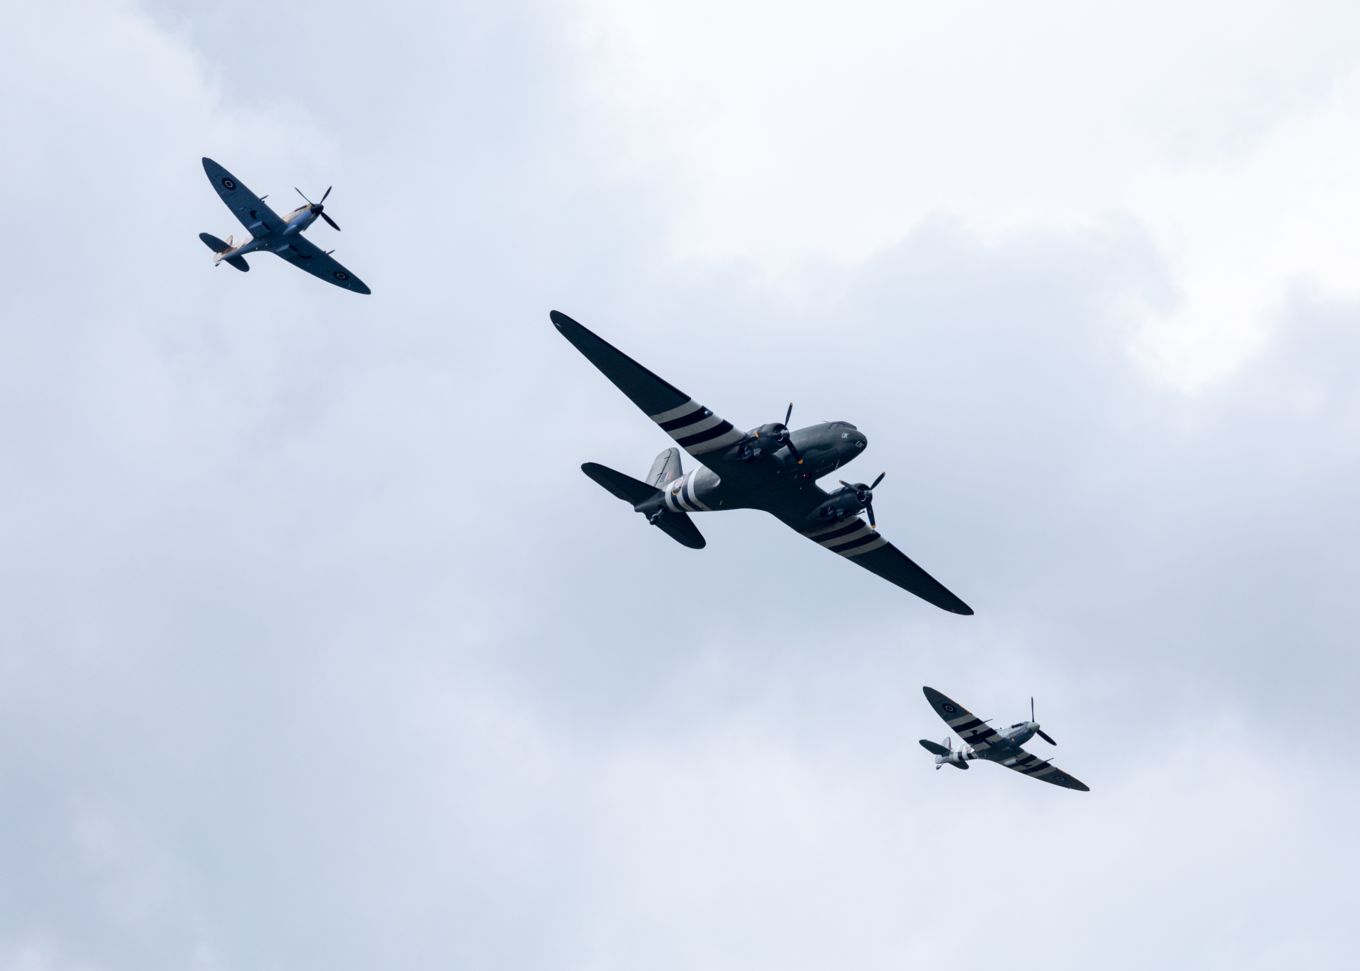 Battle of Britain Memorial Flight practice their display in the skies over RAF Honington